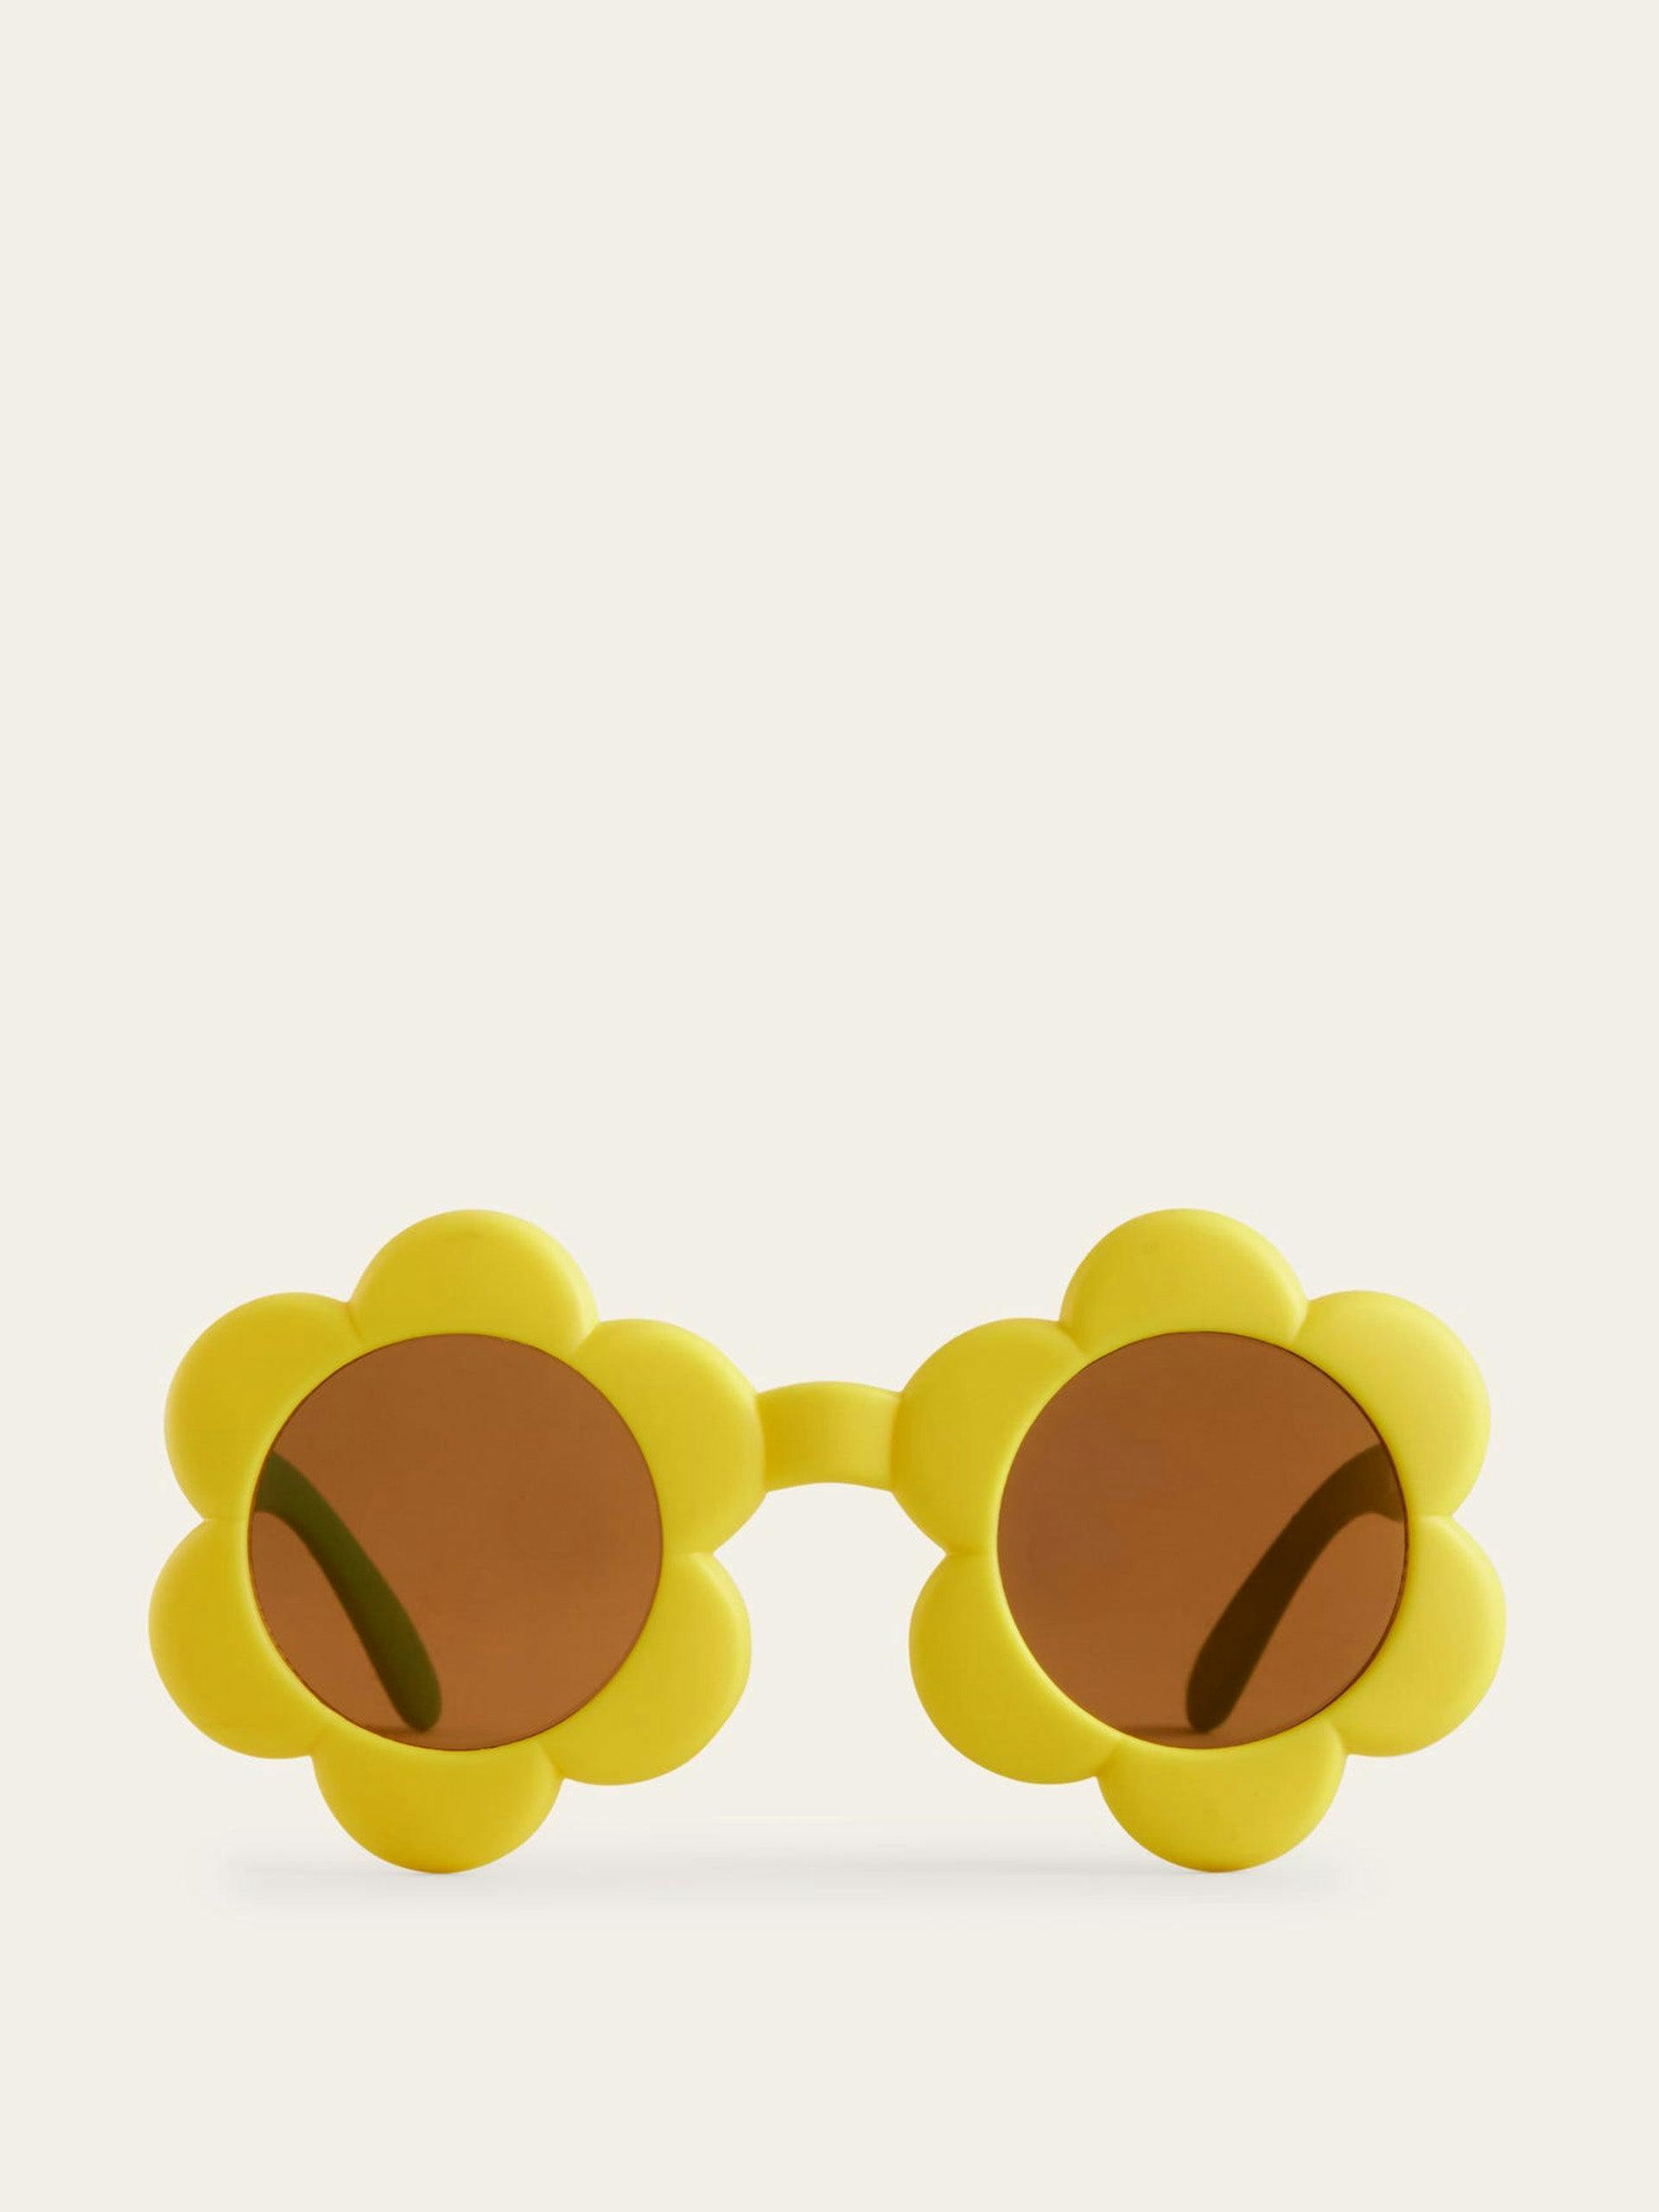 Fun sunglasses